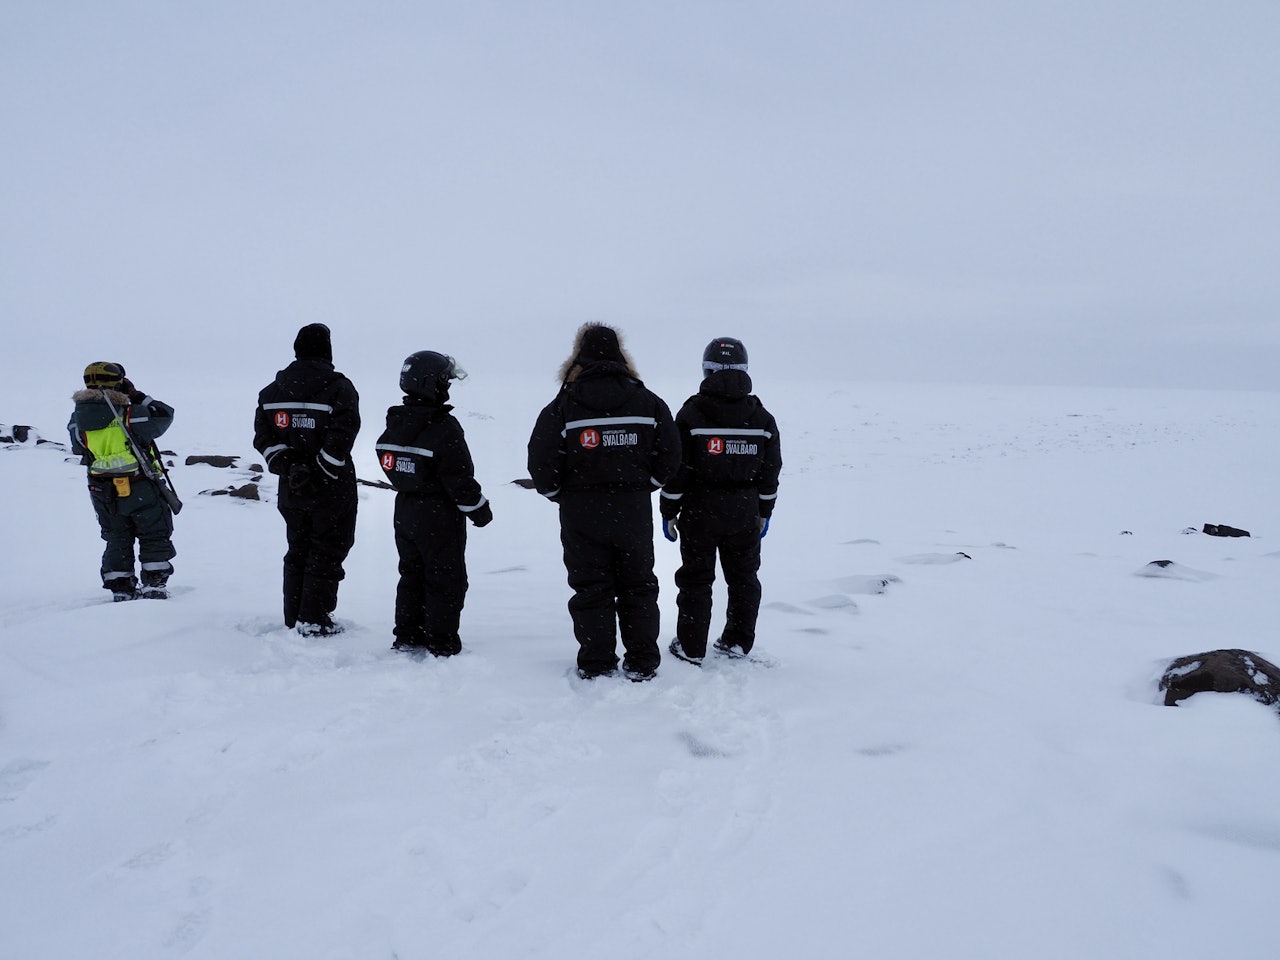 SPEIDER ETTER ISBJØRN: Vi prøver å få øye på isbjørn ute i Mohnbukta, og litt senere så vi den faktisk. Foto: Lisa Kvålshaugen Bjærum